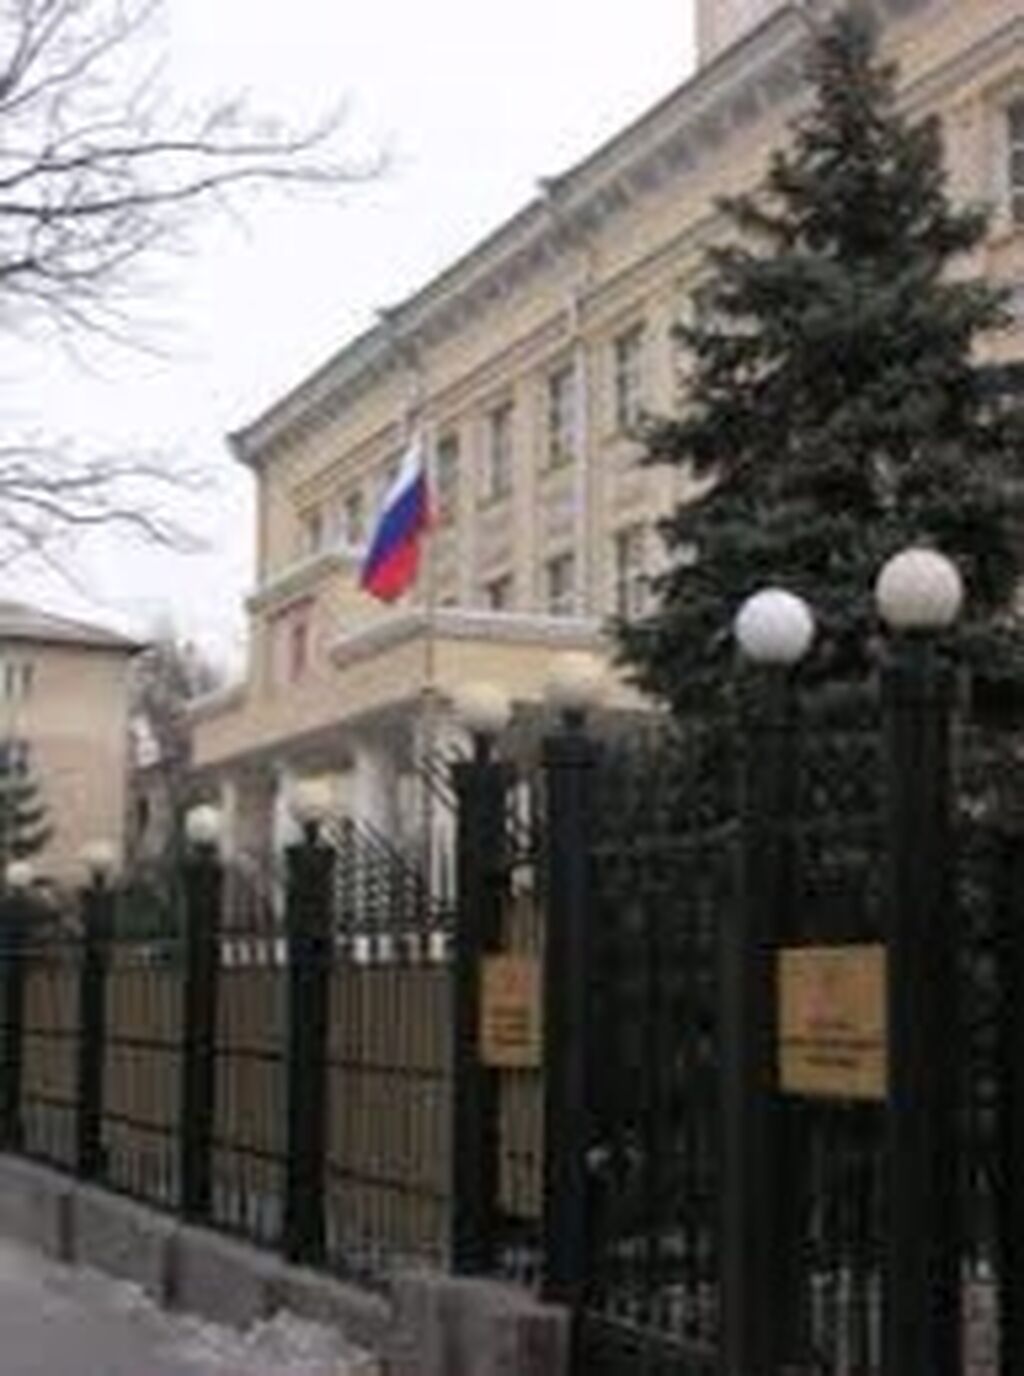 Посольство киргизской республики